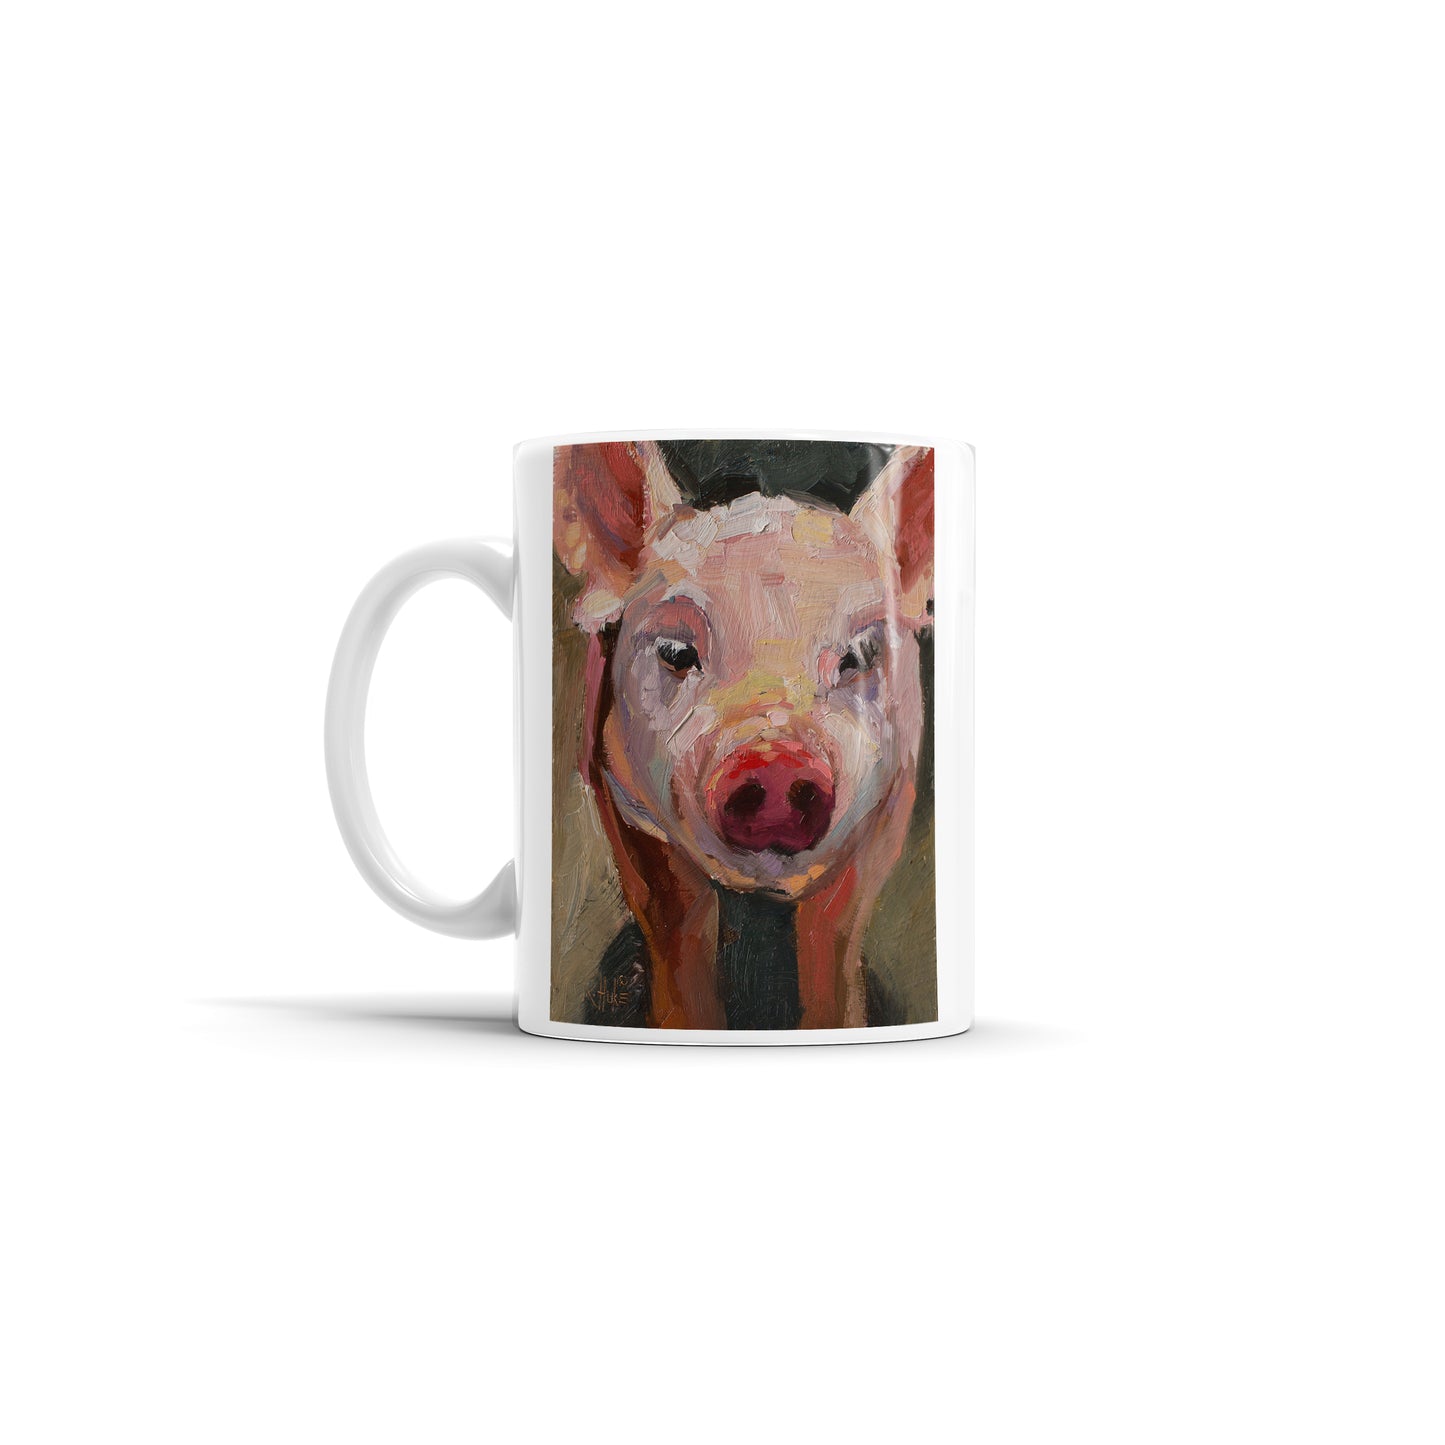 Farm Pig Mug By K. Huke